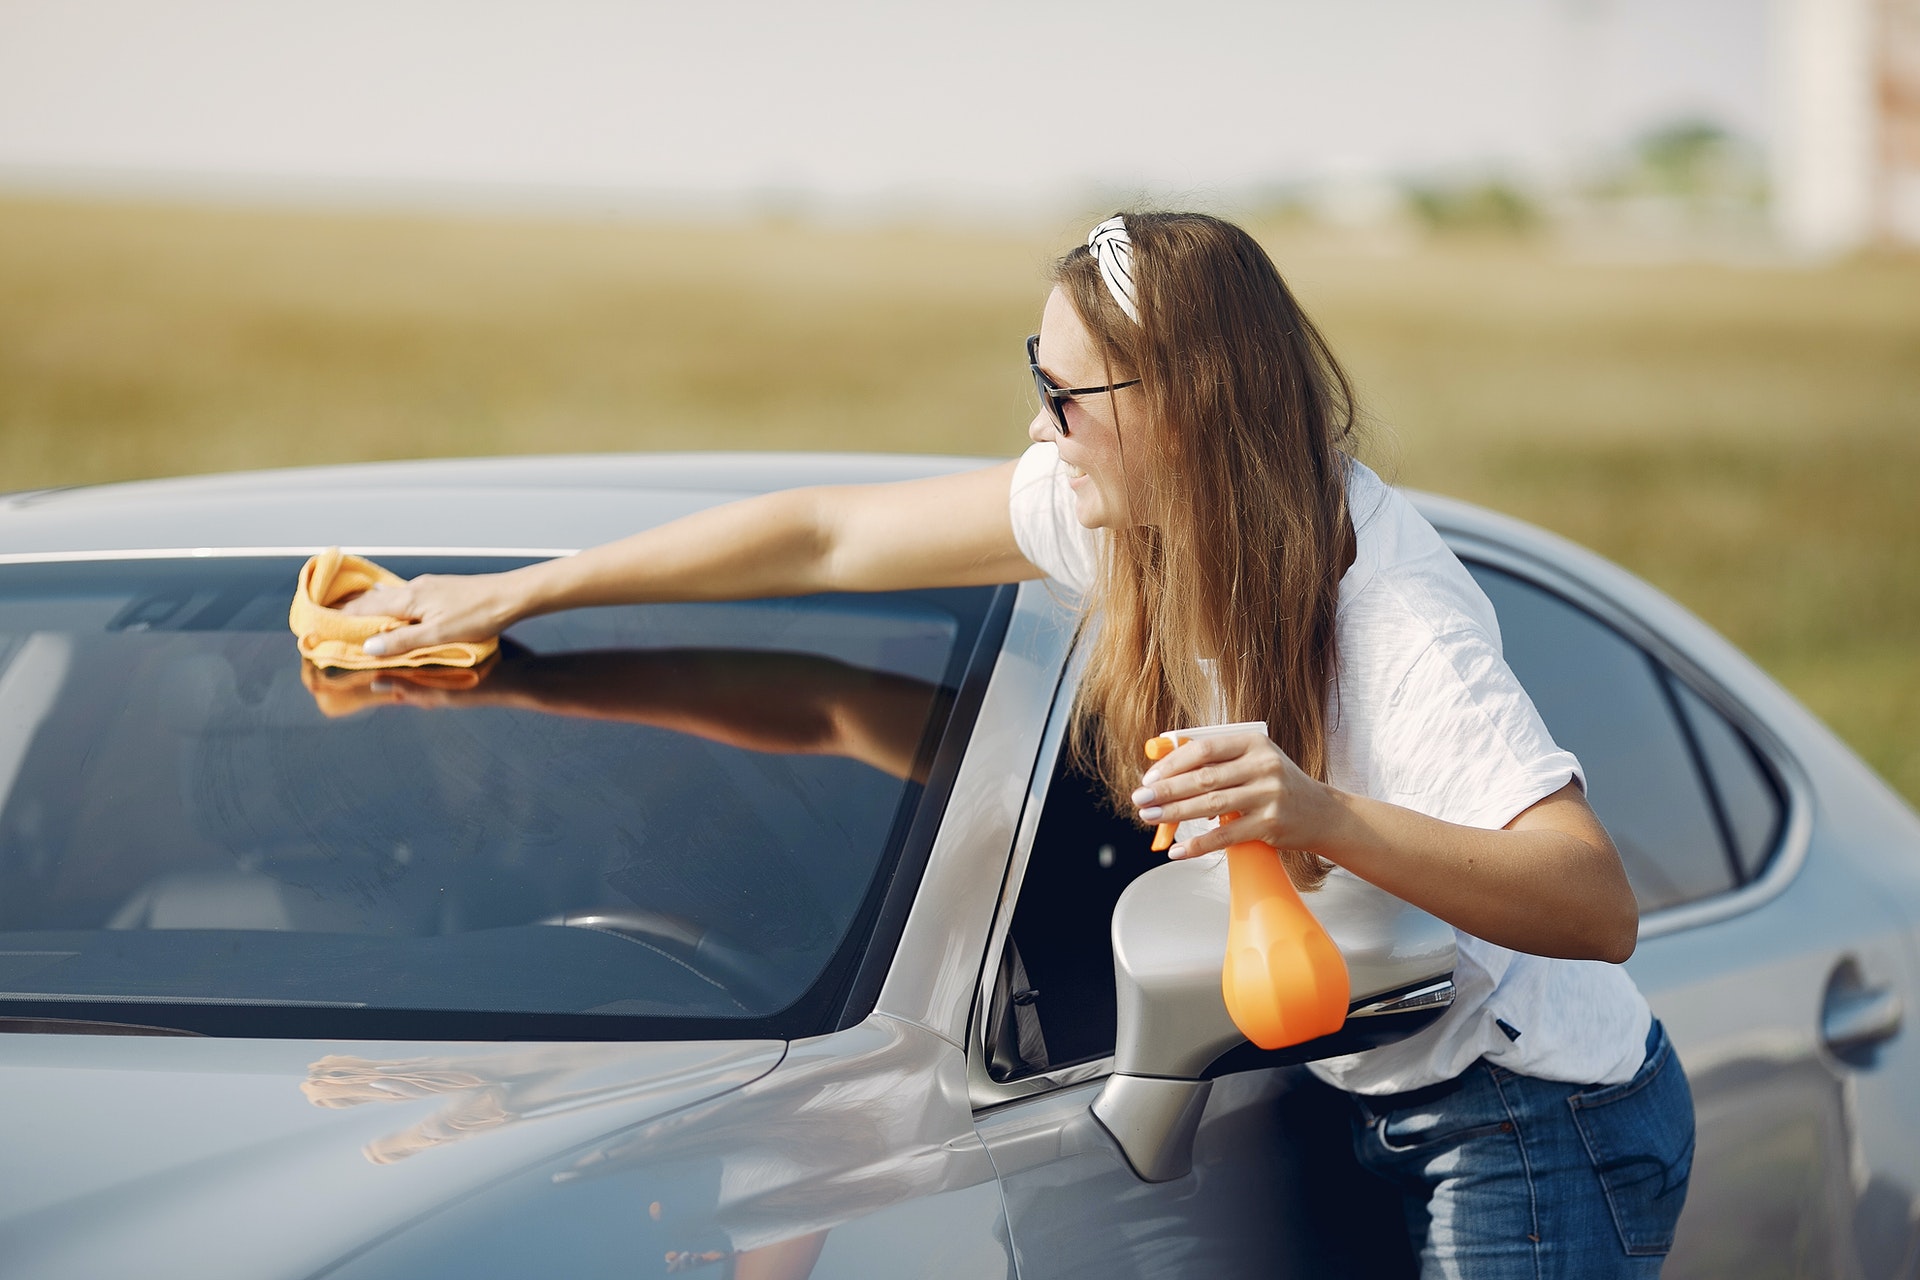 Imagem de uma mulher limpando o carro.